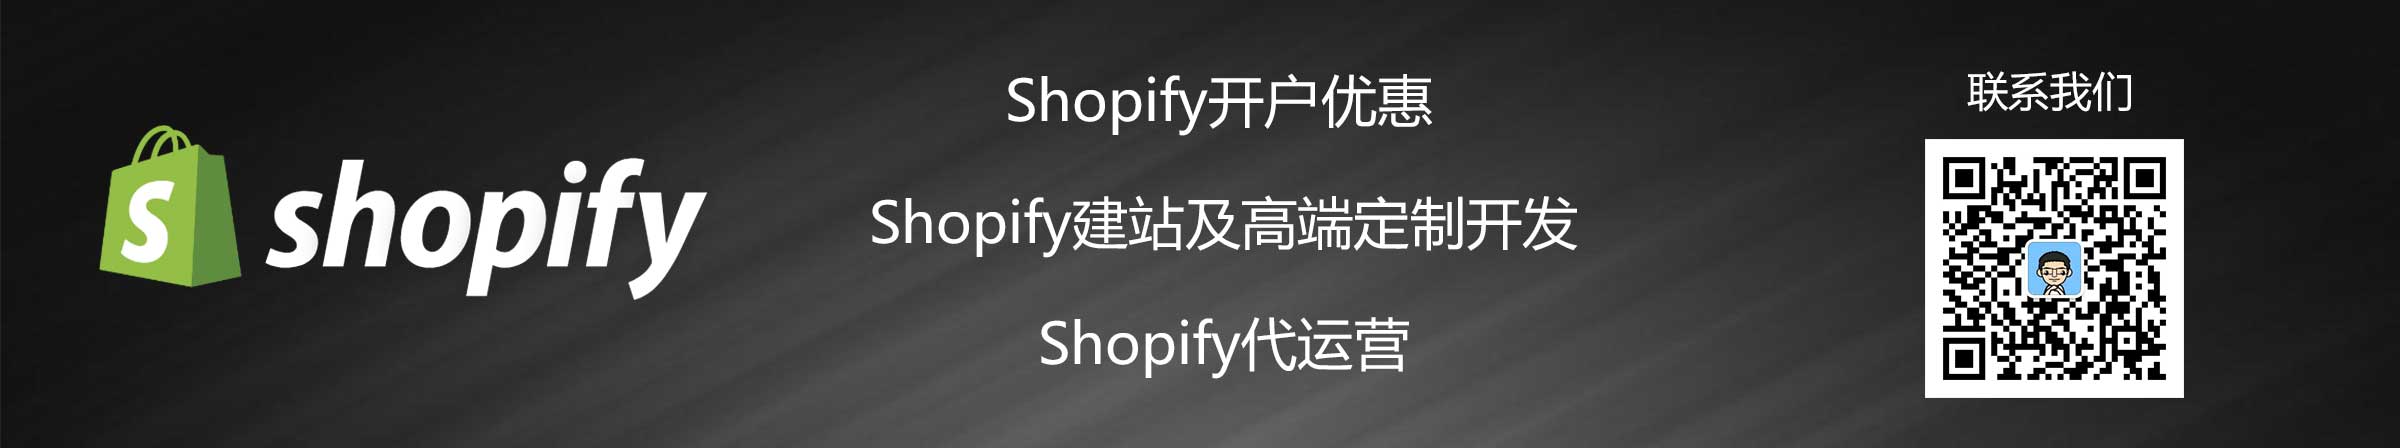 shopify服务商